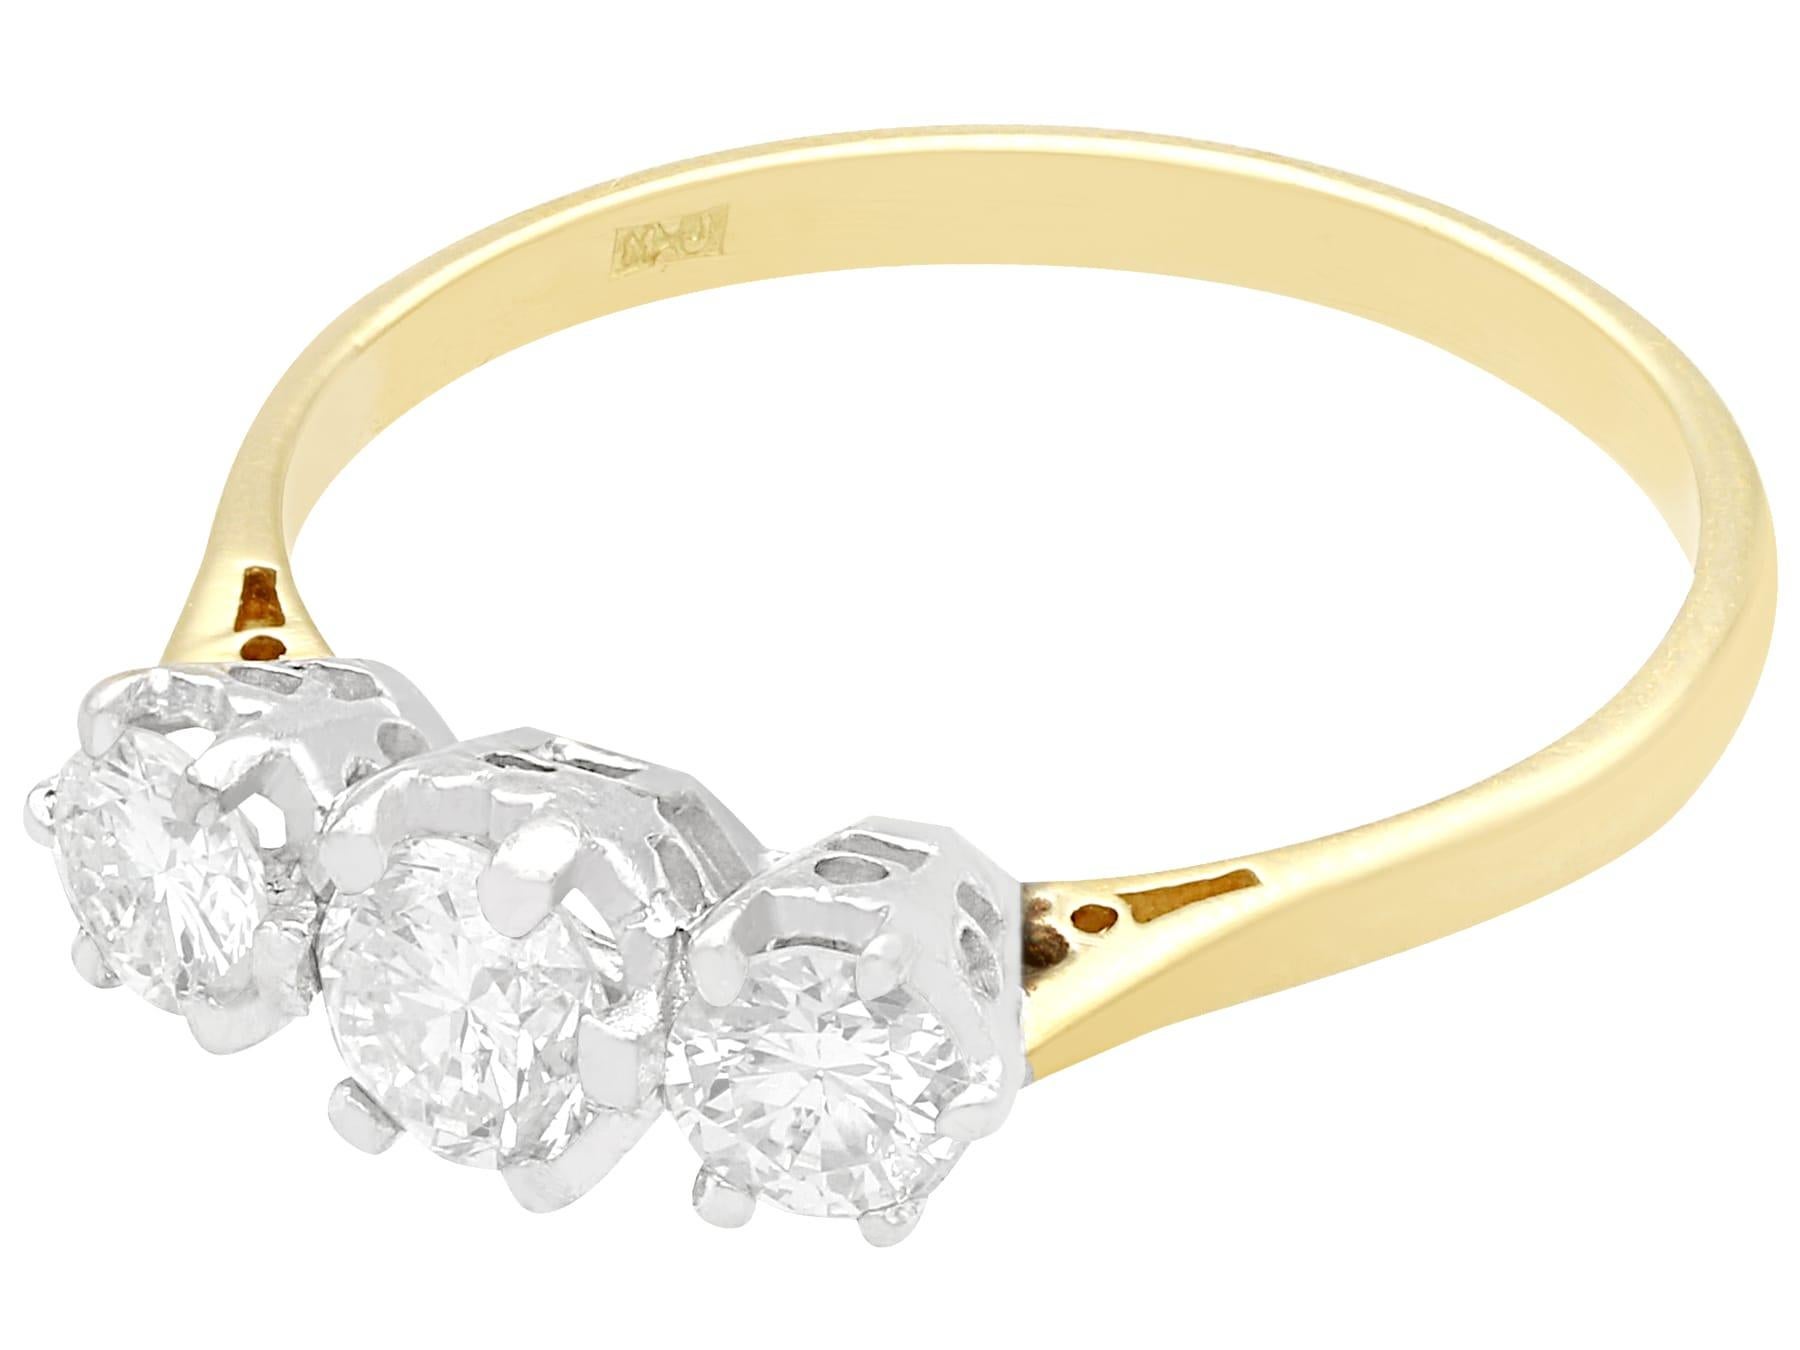 Ein feiner und beeindruckender Vintage-Ring mit 0,85 Karat Diamanten und 18 Karat Gelb- und 18 Karat Weißgold mit drei Steinen; Teil unserer Diamantschmuck- und Nachlassschmuckkollektionen

Dieser beeindruckende Diamantring mit drei Steinen ist aus